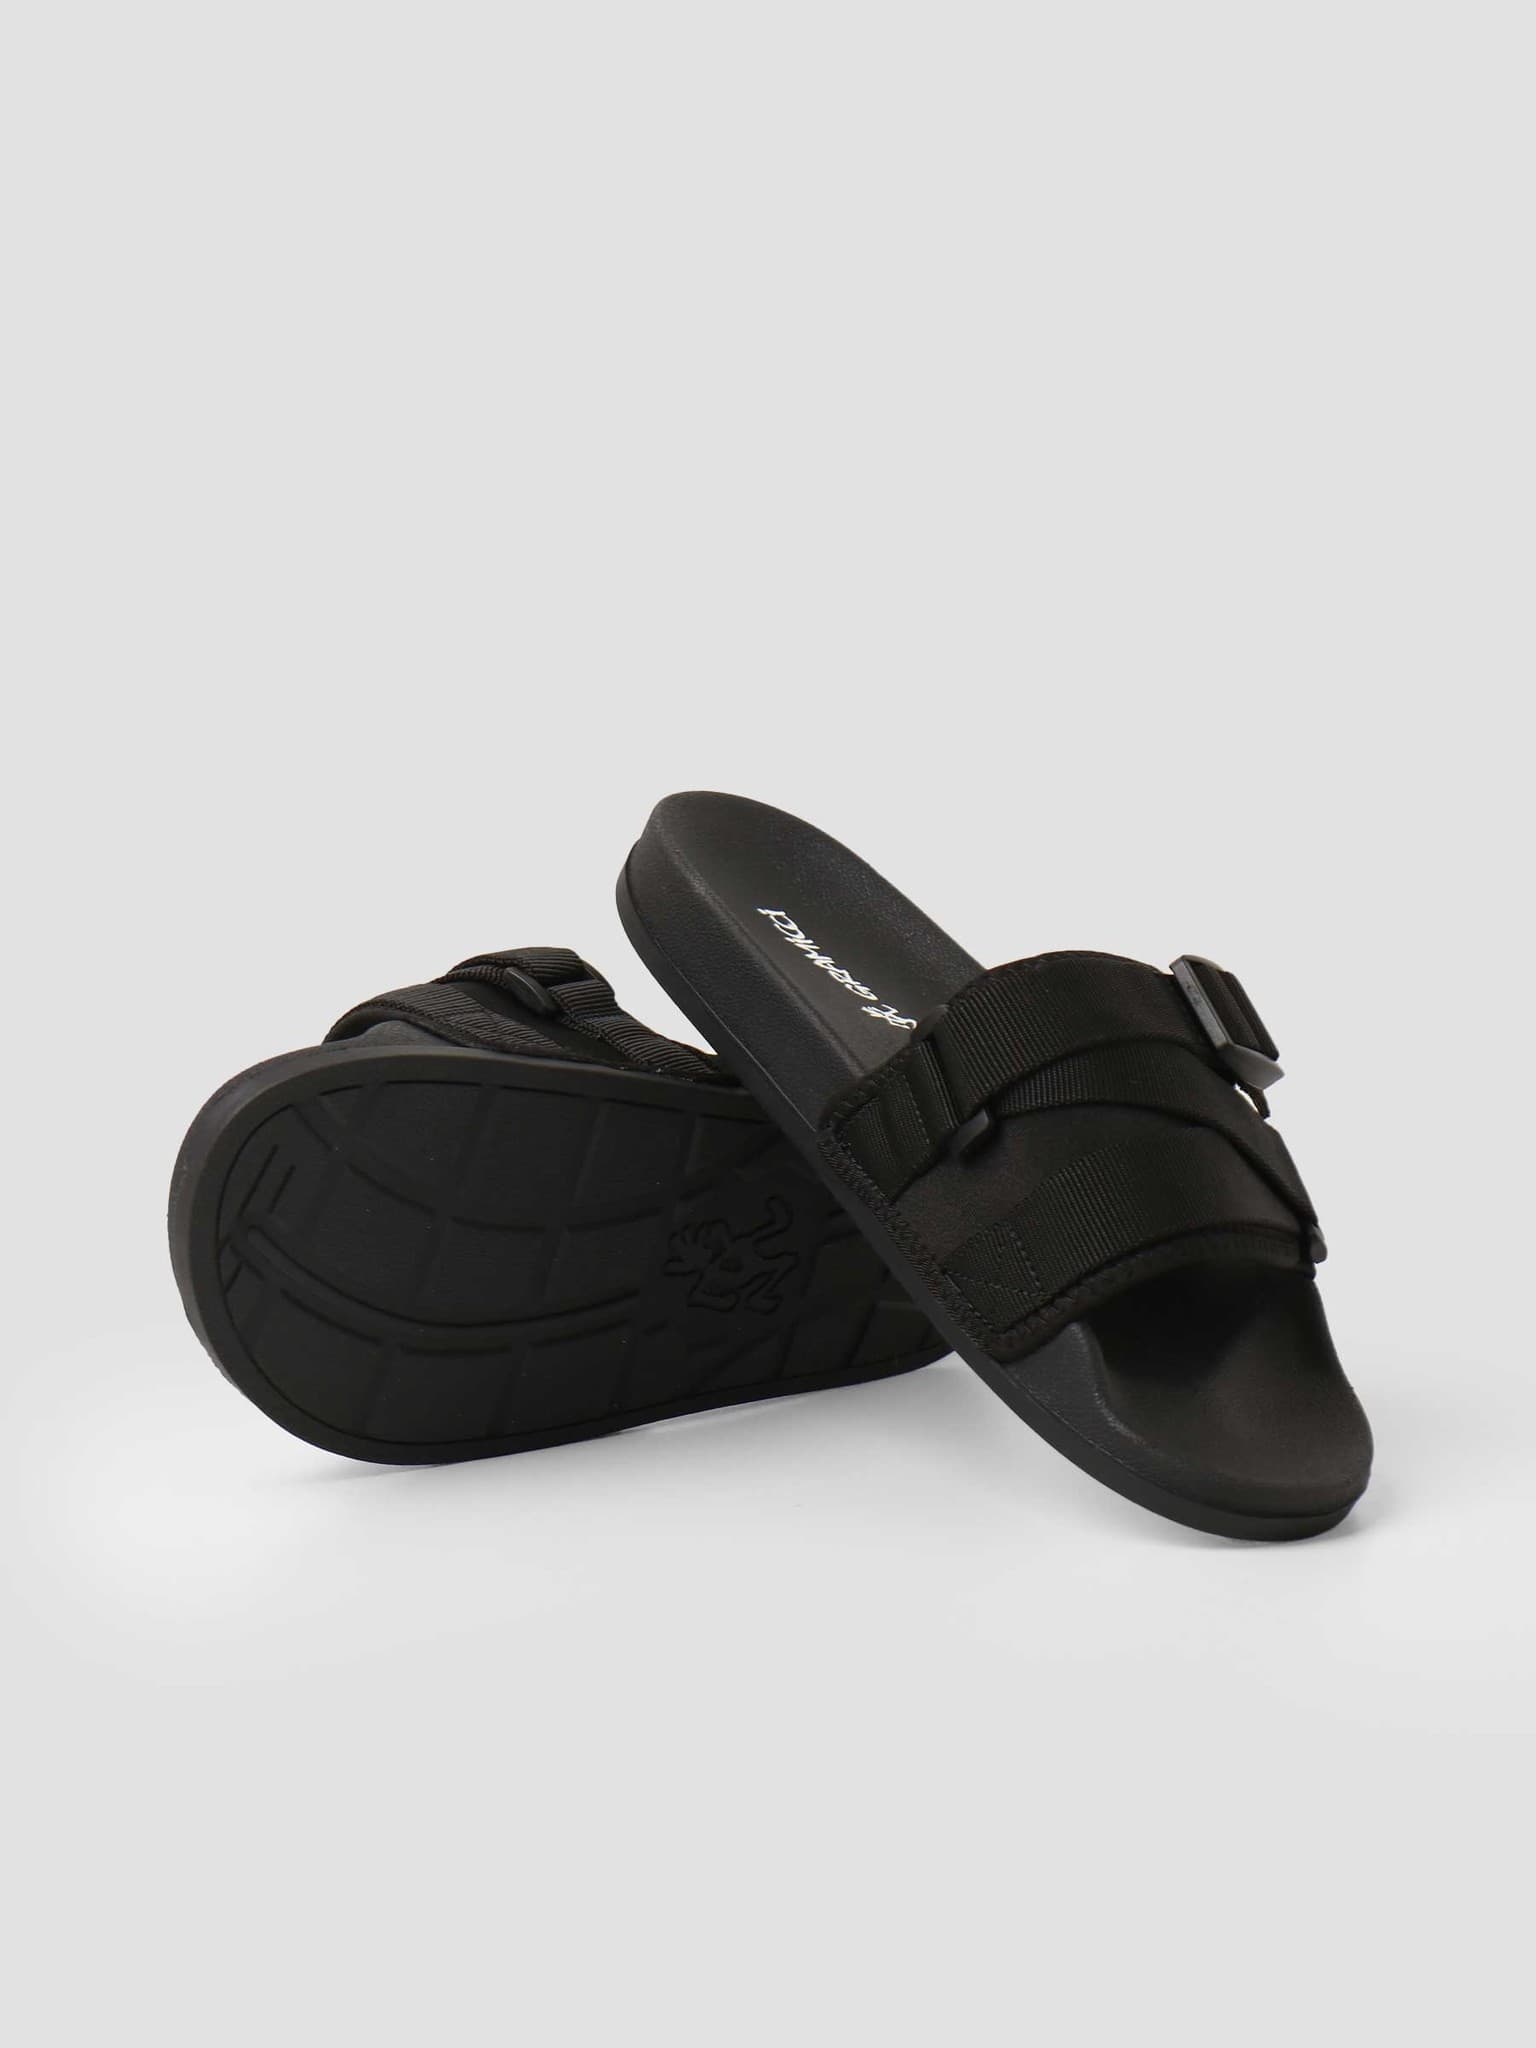 Slide Sandals Black GRF-004